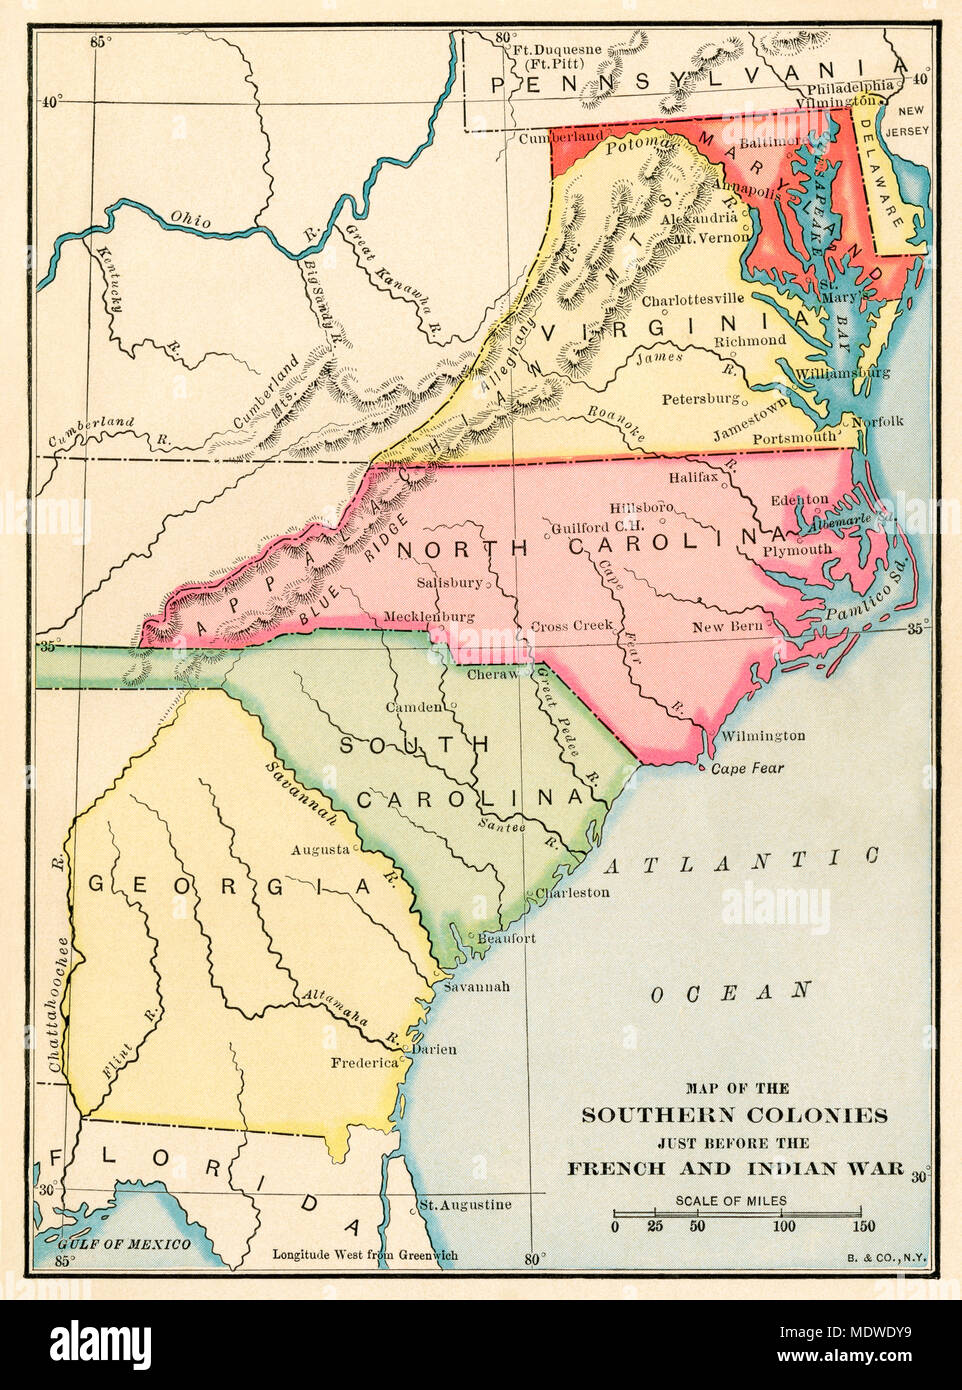 Colonie meridionale appena prima che la guerra di indiano e francese. Stampa Litografia a colori Foto Stock